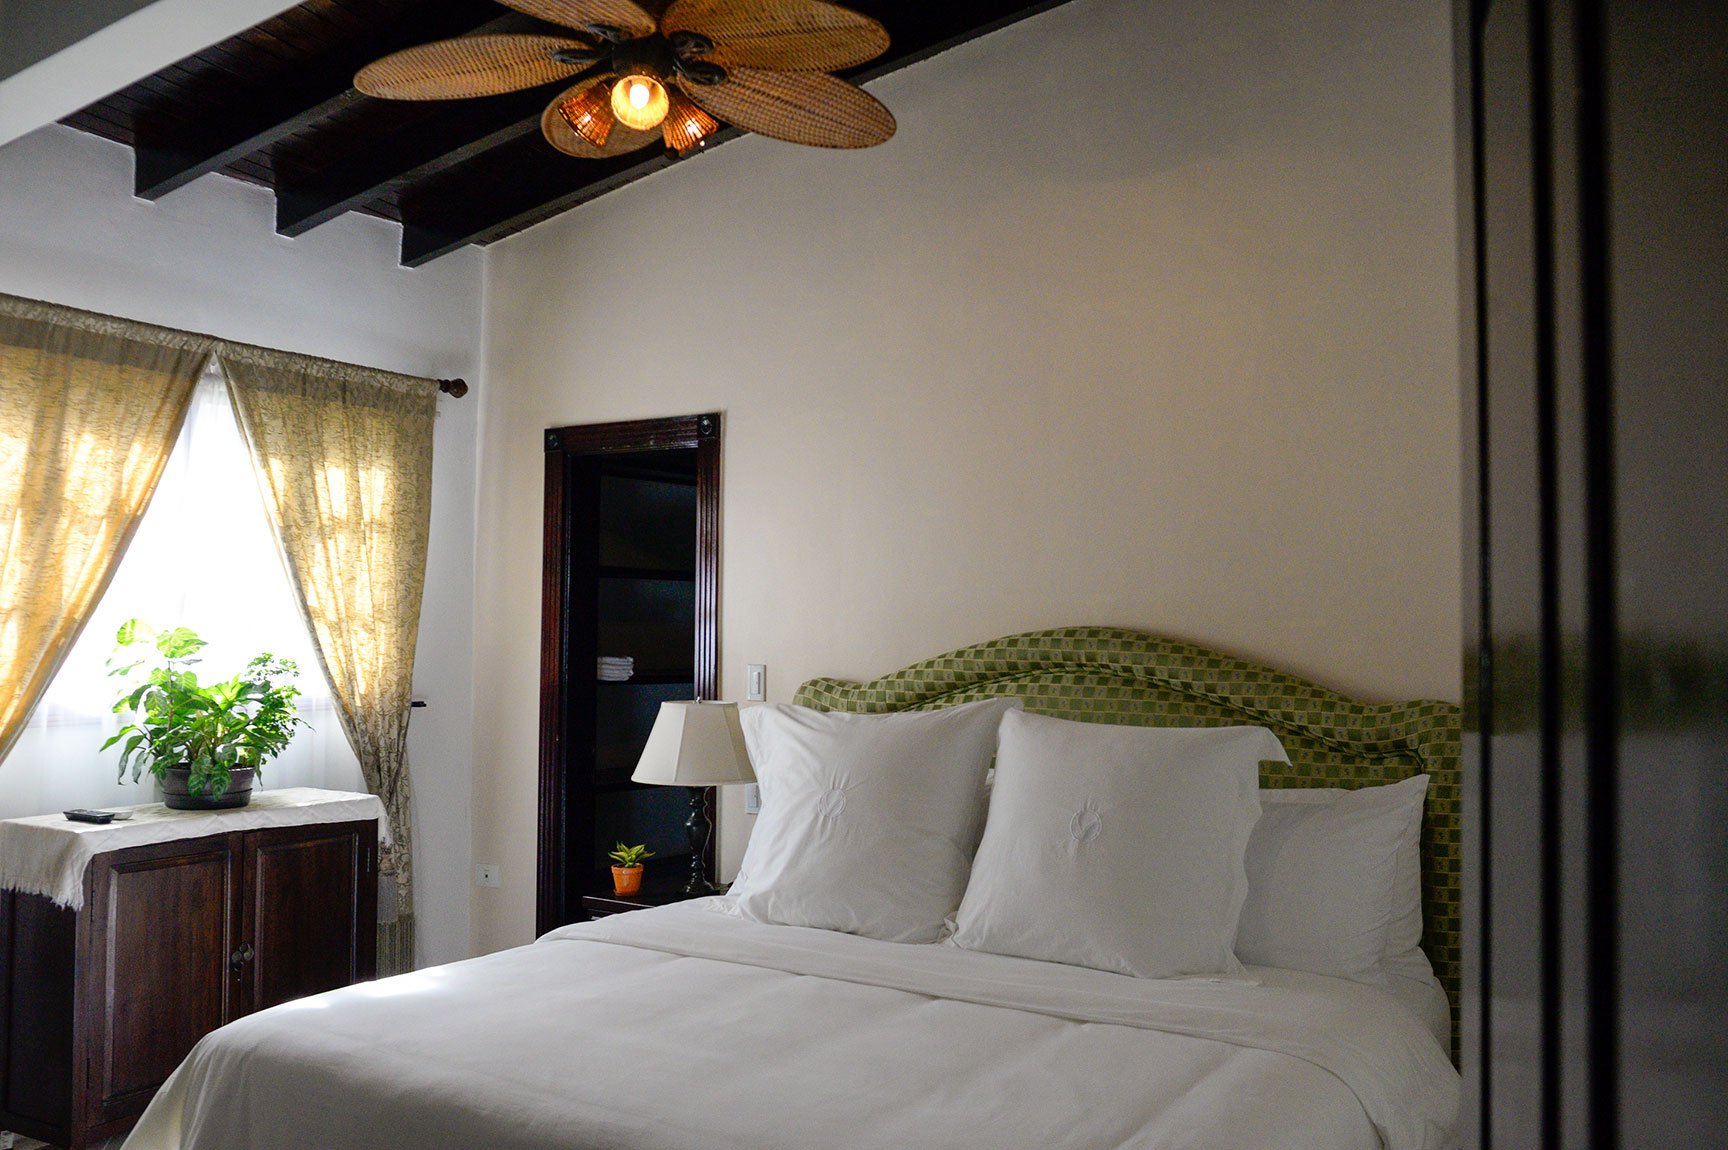 The Main Bedroom in the Villa at Vientos del Caribe